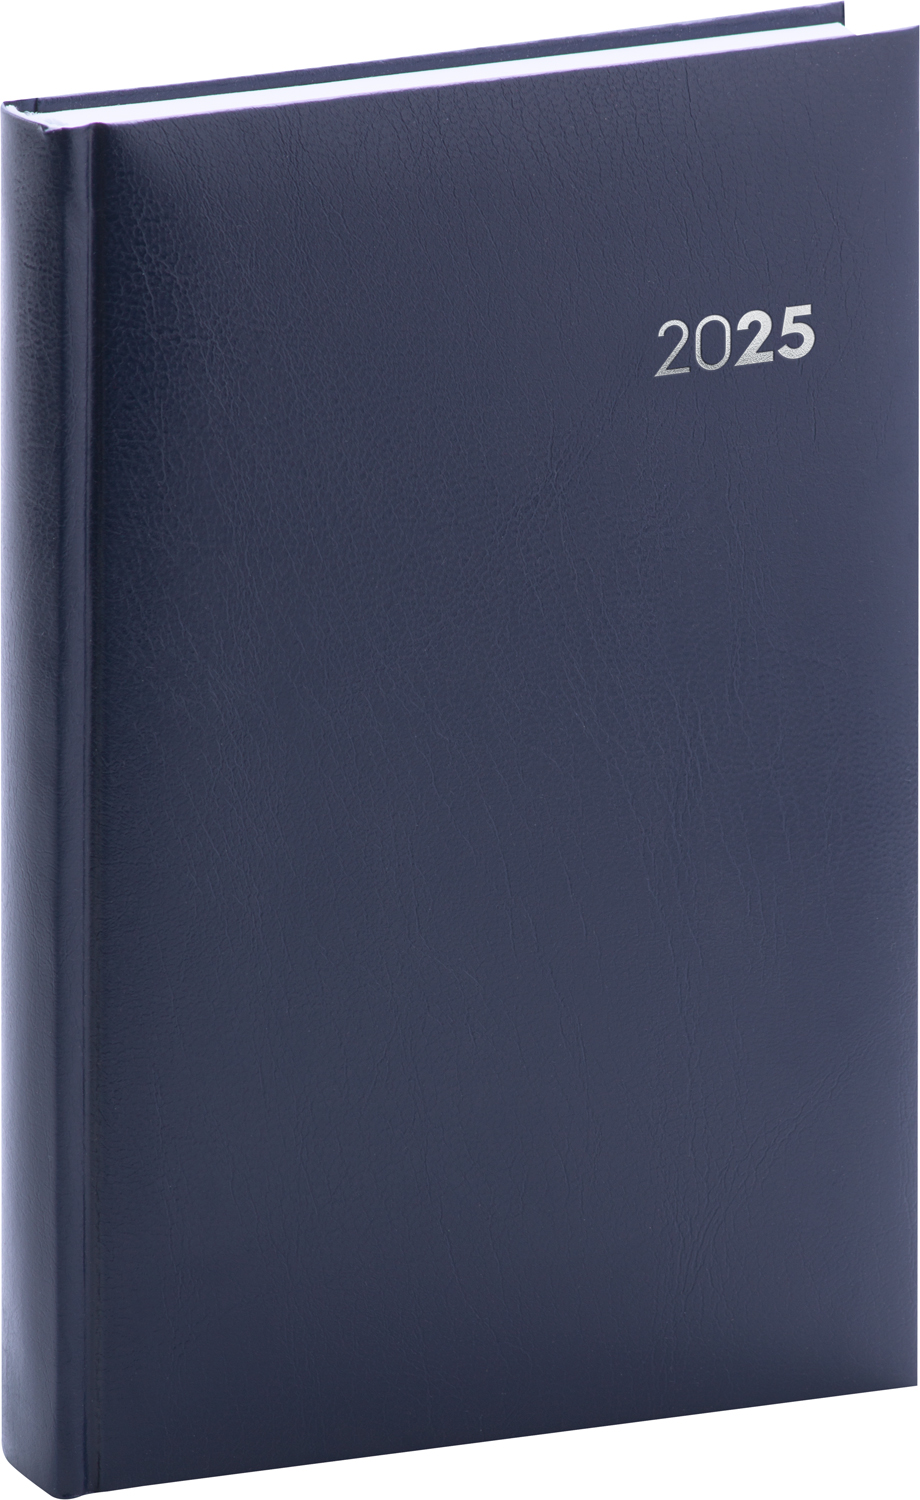 Denní diář Balacron 2025, B6 - modrá